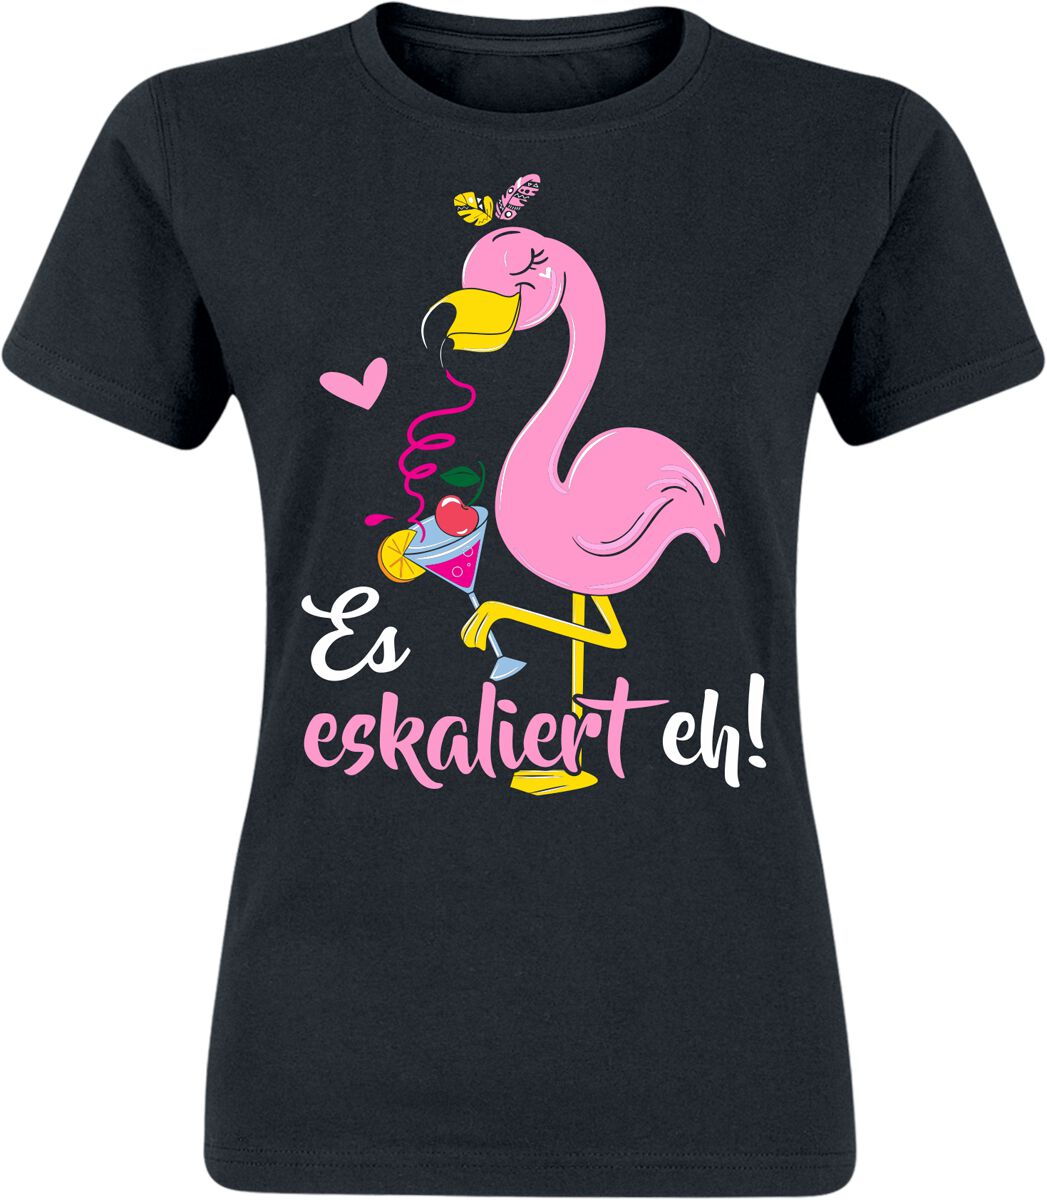 Alkohol & Party T-Shirt - Flamingo - Es eskaliert eh! - S bis XXL - für Damen - Größe M - schwarz